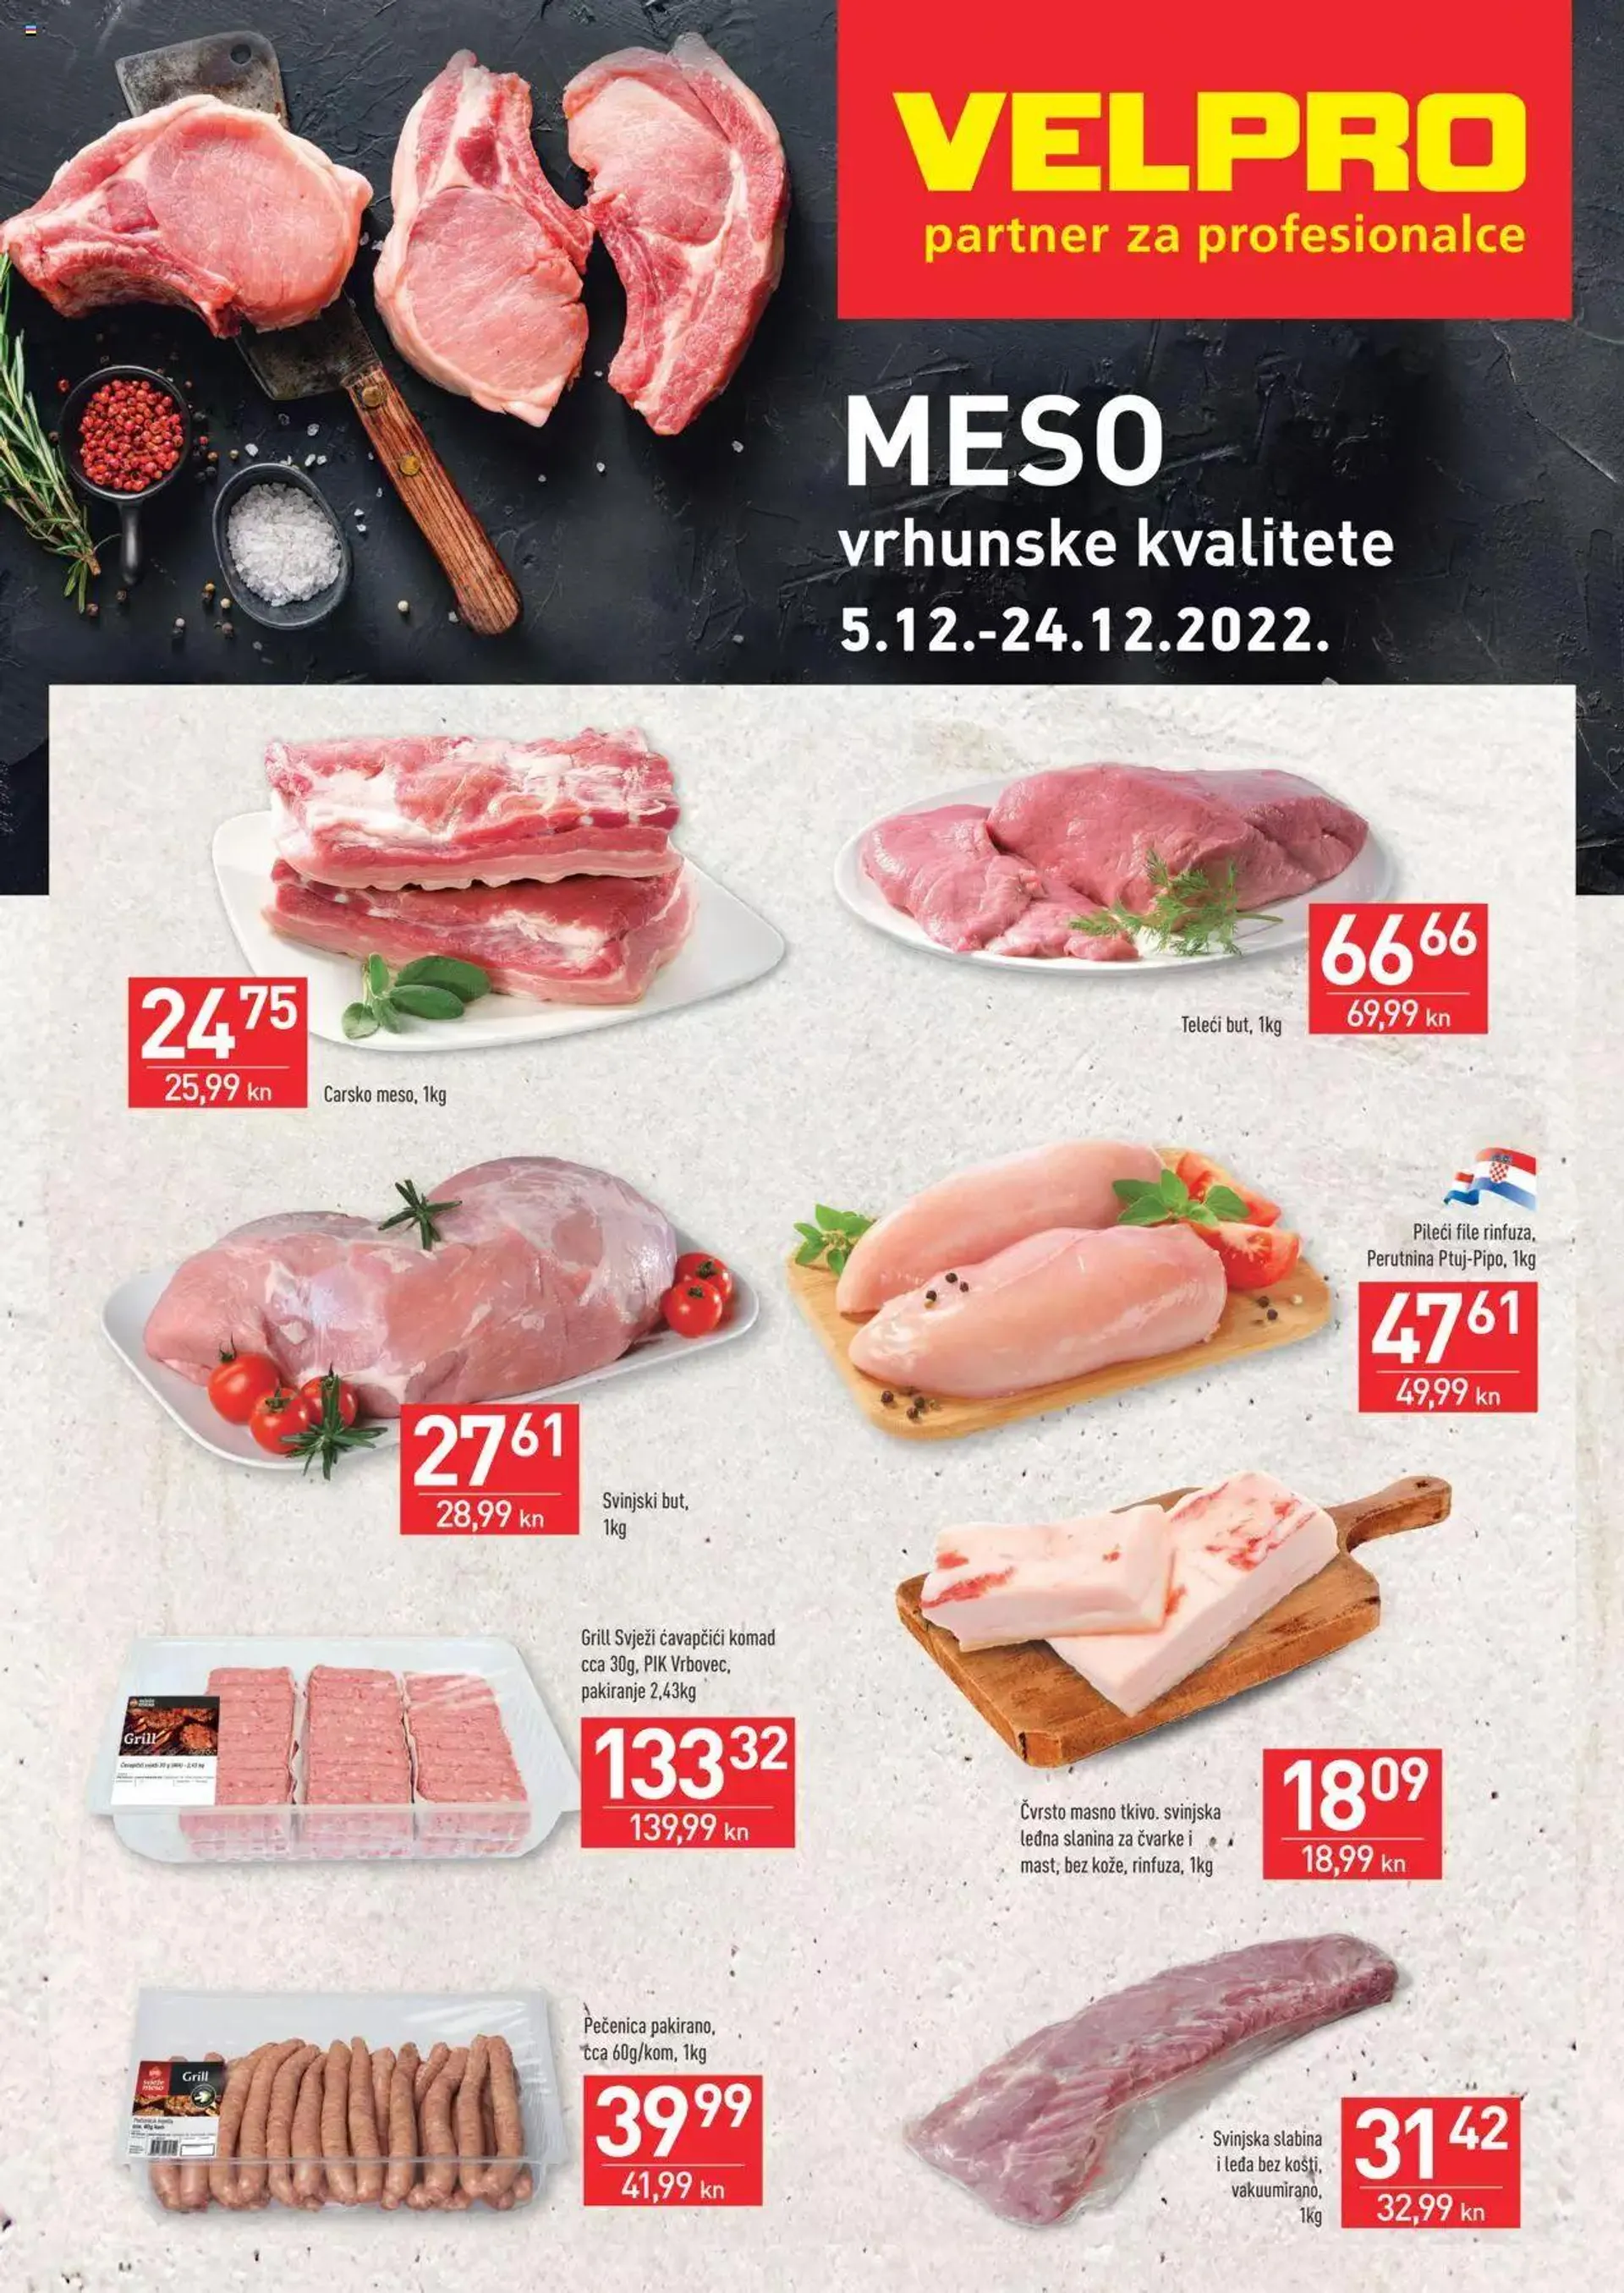 Velpro - Akcijska ponuda mesa - 0